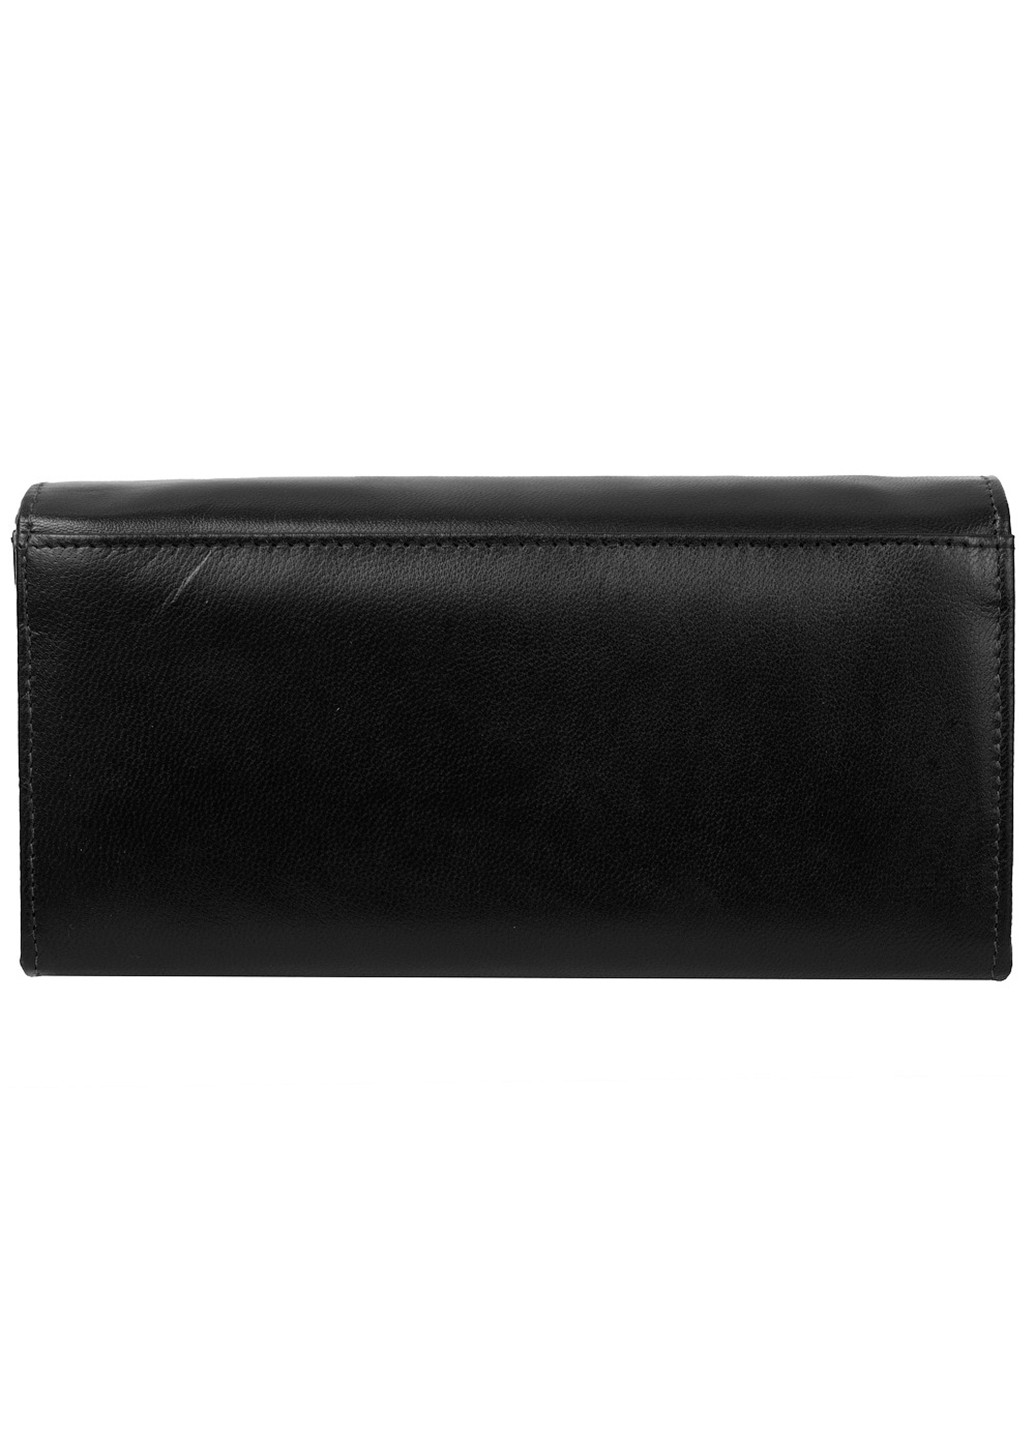 Жіночий шкіряний гаманець 18х10х3 см MALEDIVES (253027383)